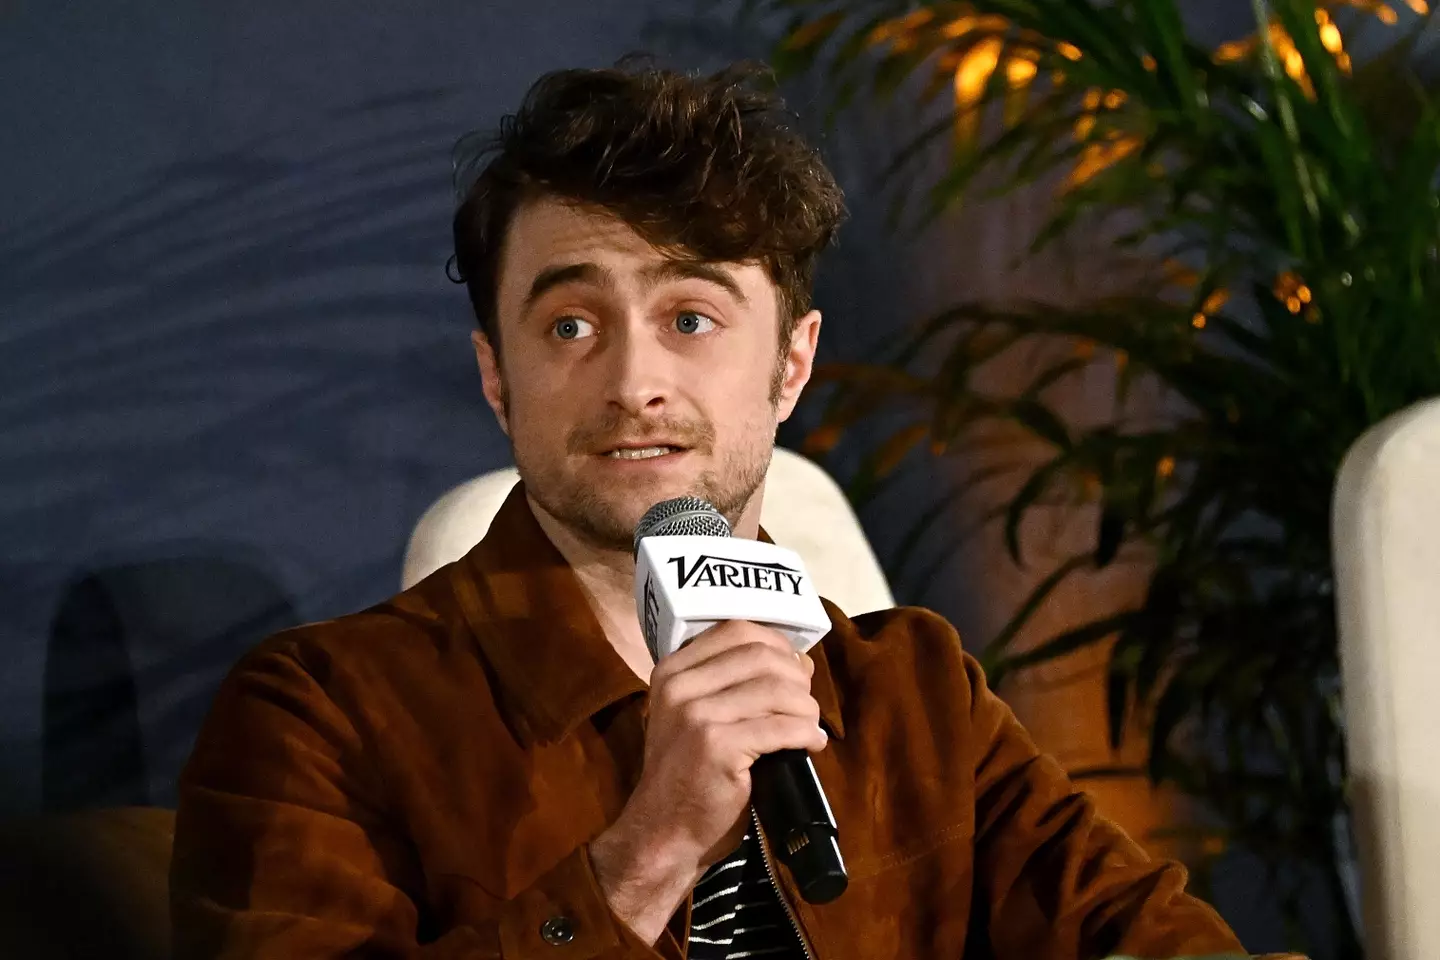 Daniel Radcliffe has spoken out about J.K Rowling's comments. (Steven Ferdman/Getty Images)